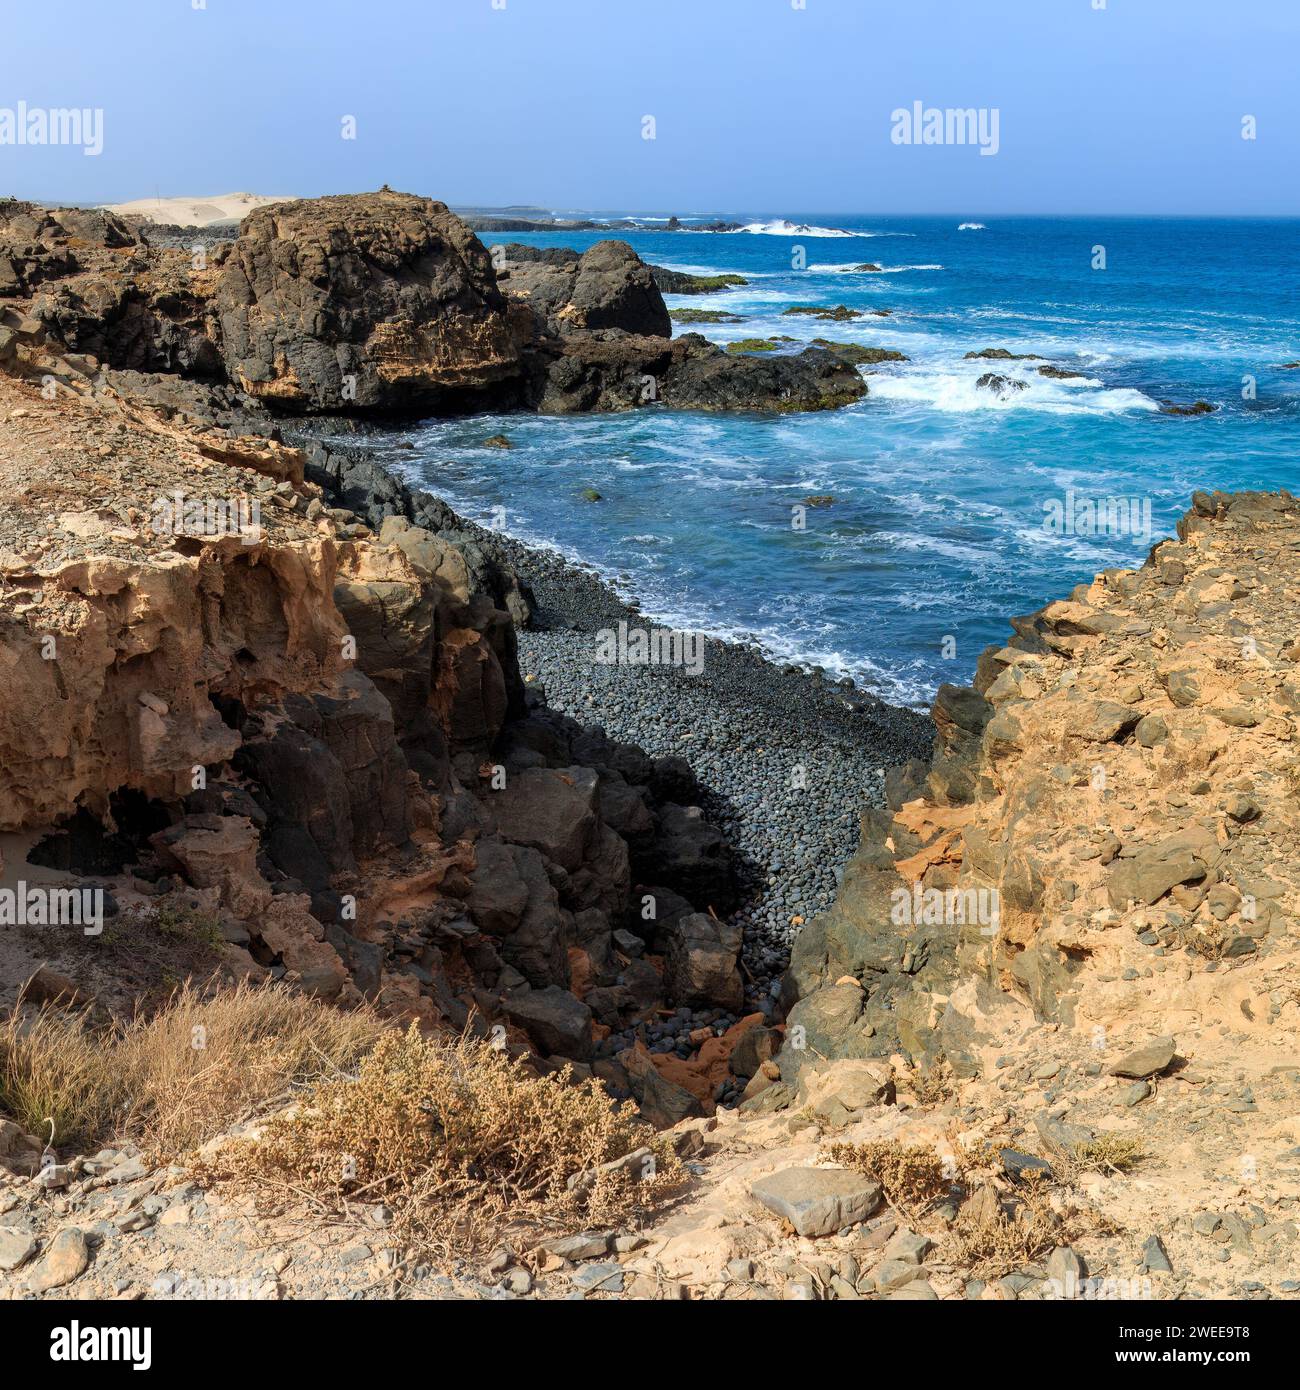 Côte accidentée de Boa Vista : rochers et vagues océaniques. Photo de haute qualité Banque D'Images